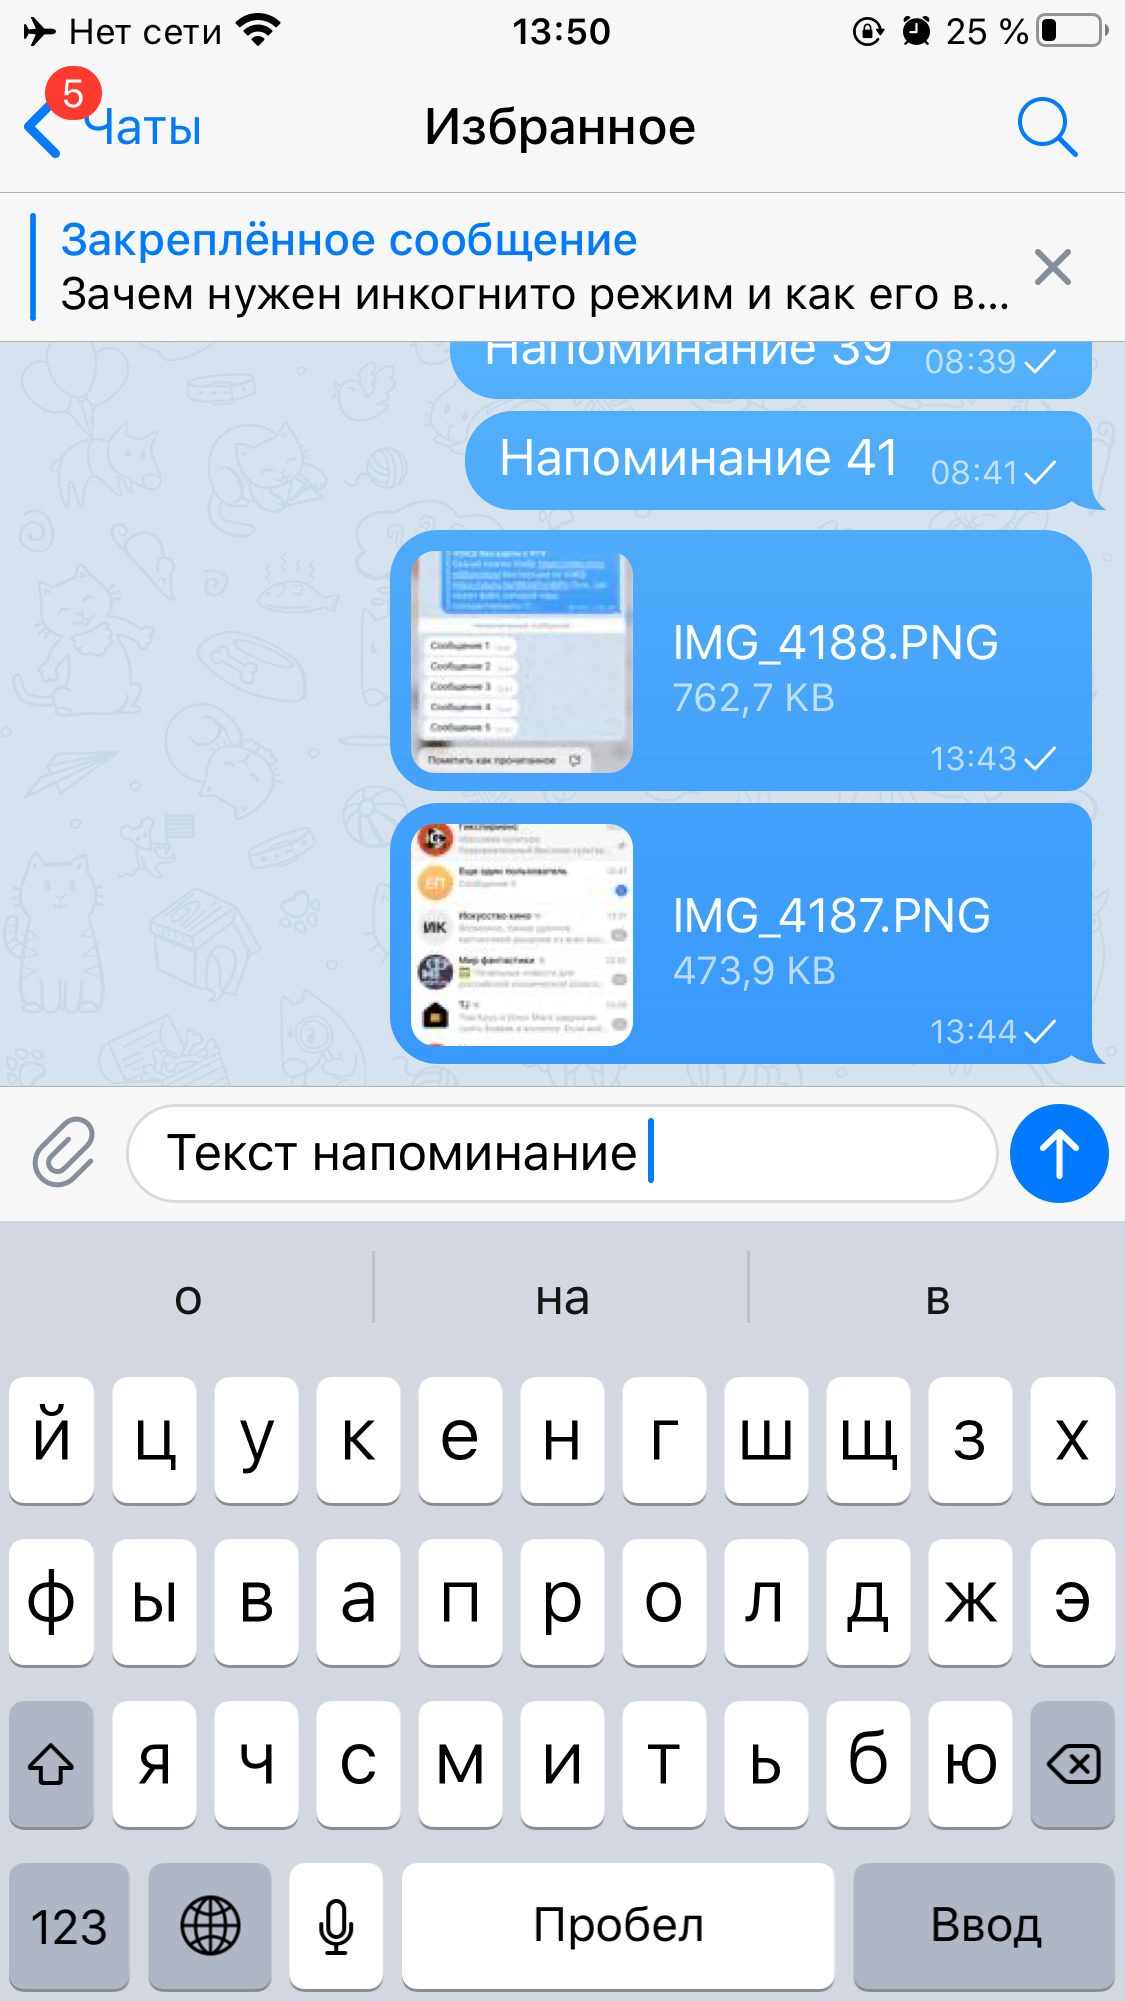 Возможности телеграмм на русском языке фото 89